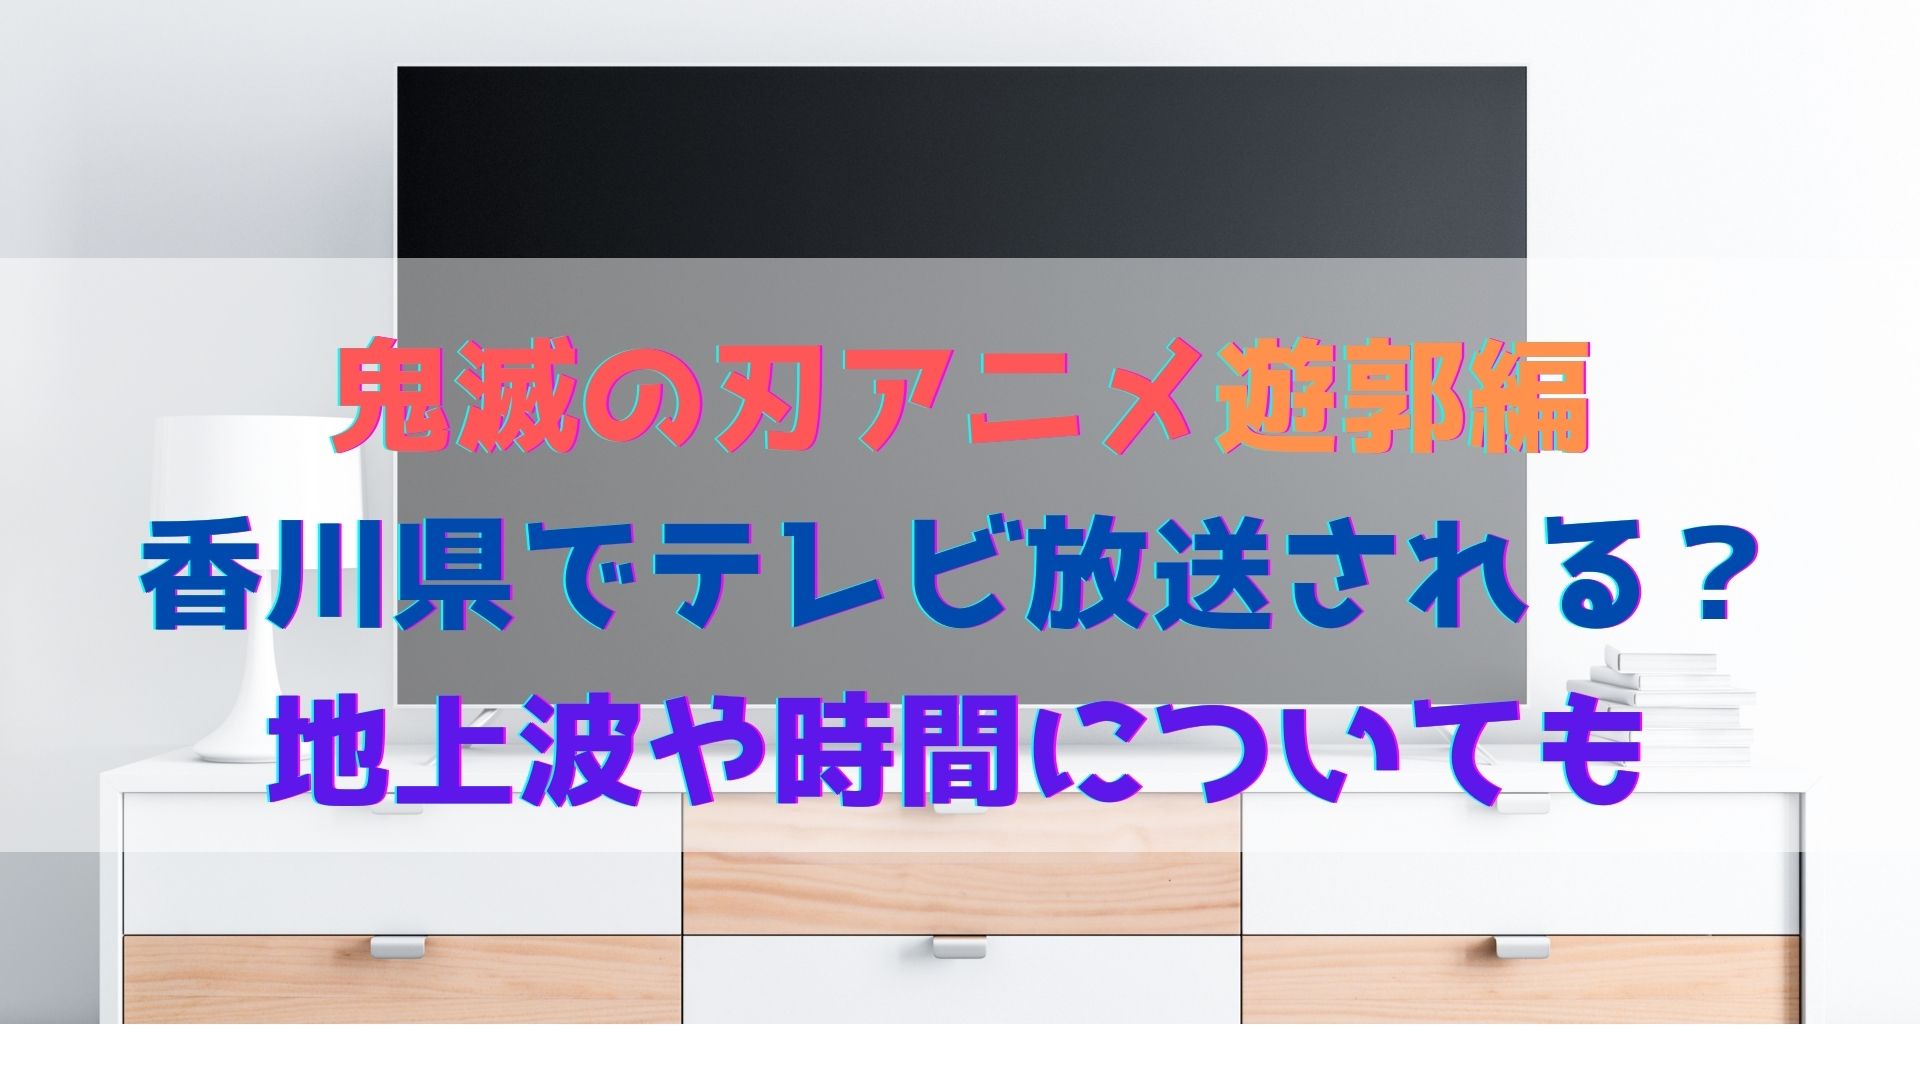 鬼滅の刃アニメ遊郭編は香川県でテレビ放送される 地上波や時間についても ハヤ リノ